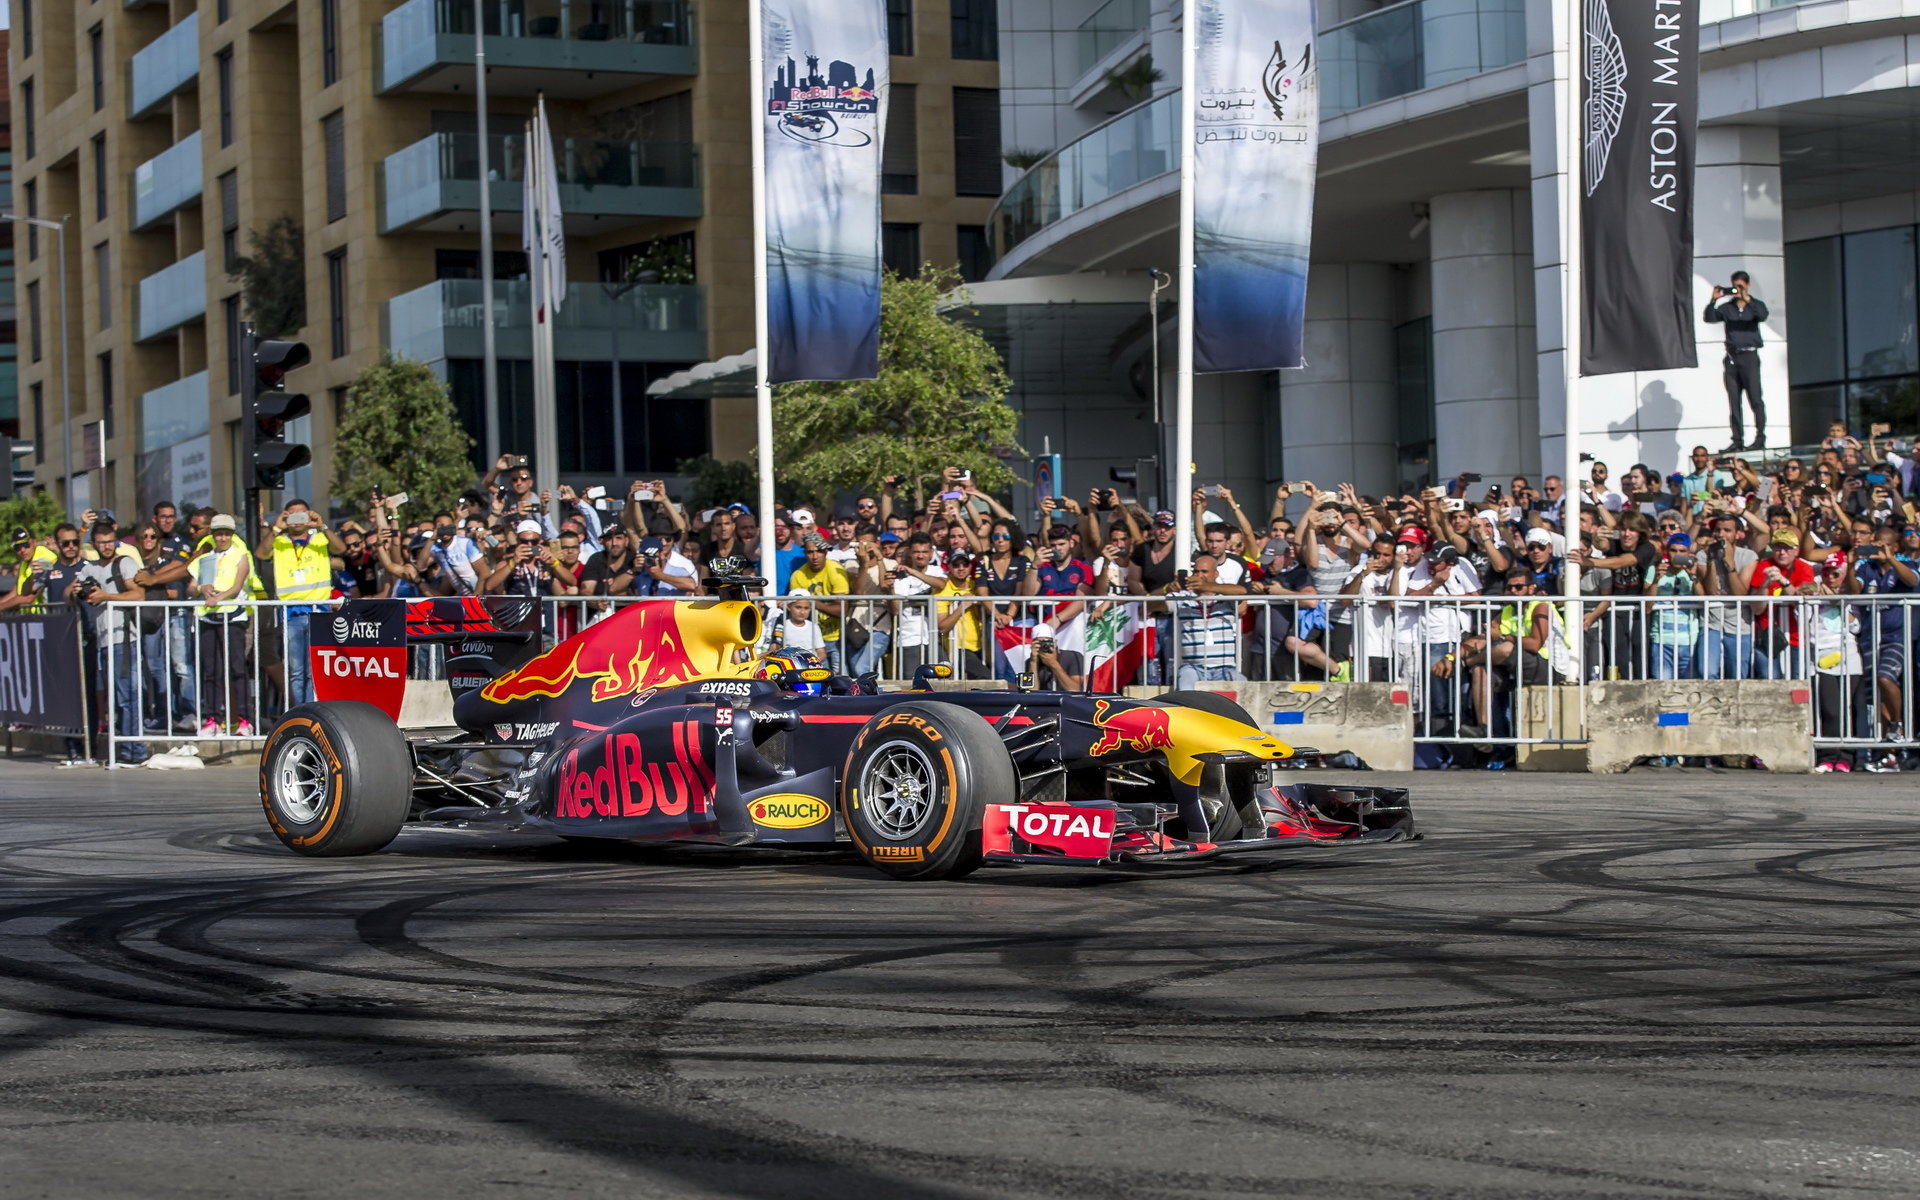 Formule 1 hostují na městských komunikacích v rámci různých show